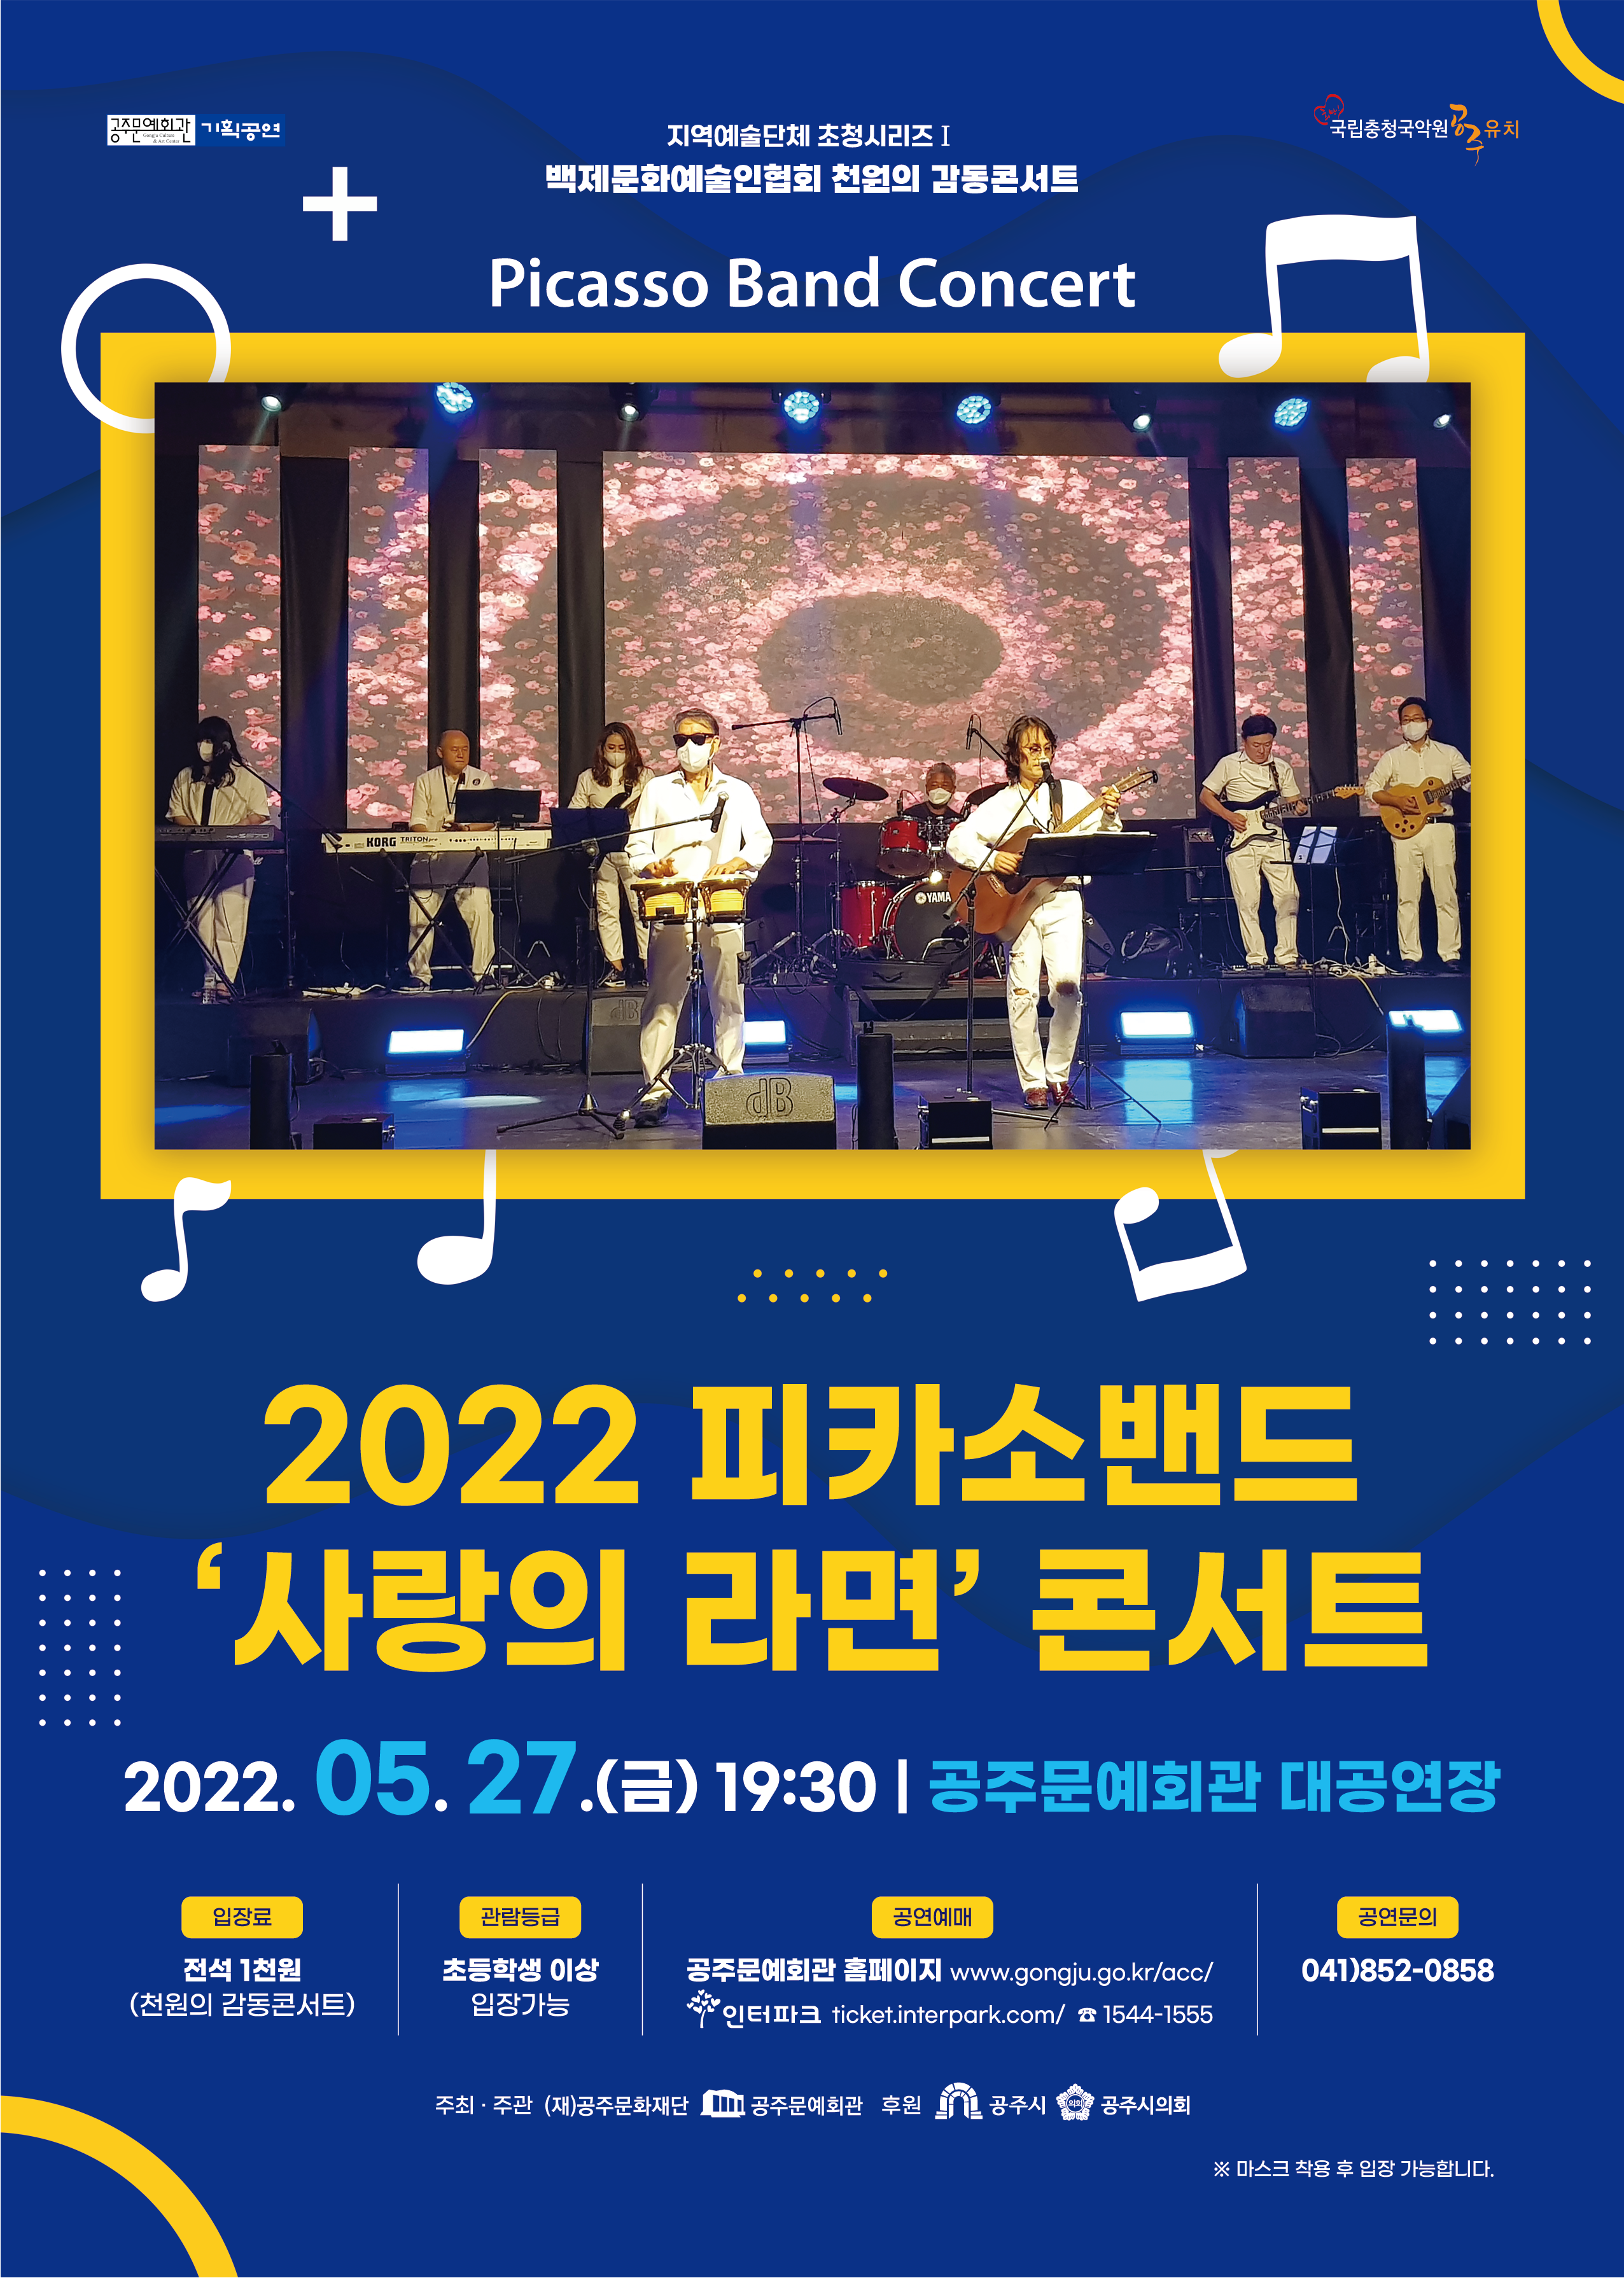 2022 피카소밴드 '사랑의 라면' 콘서트